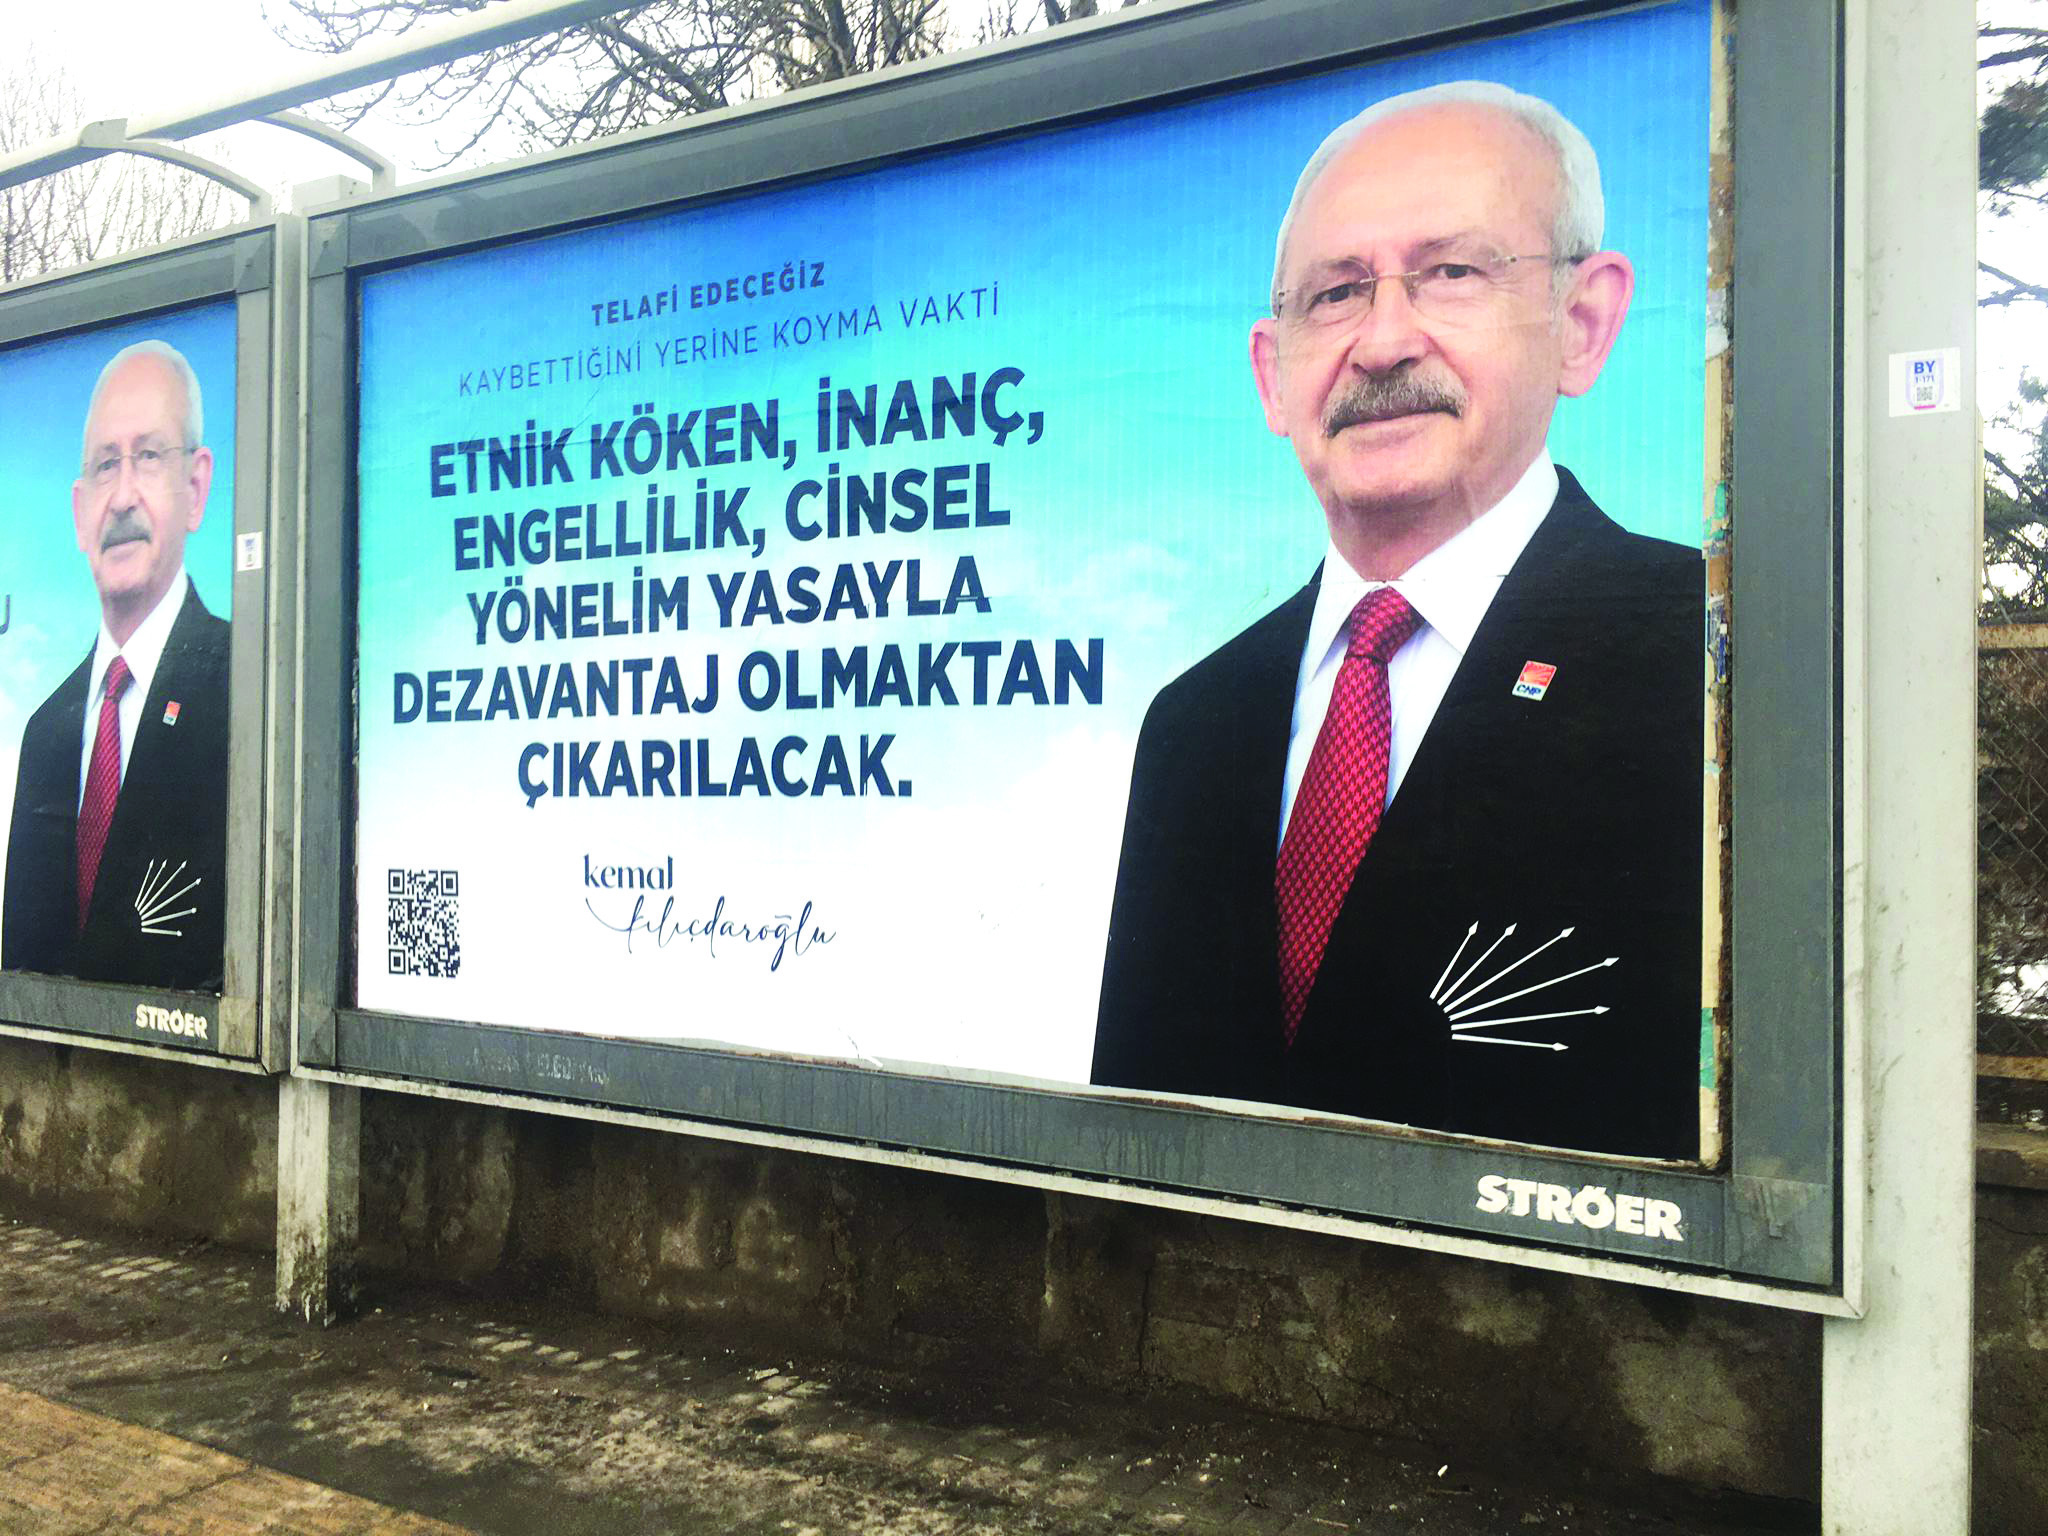 Kılıçdaroğlu eşcinseller için yasal düzenleme vaadinde bulundu: LGBT’ye evlilik vaadi mi?